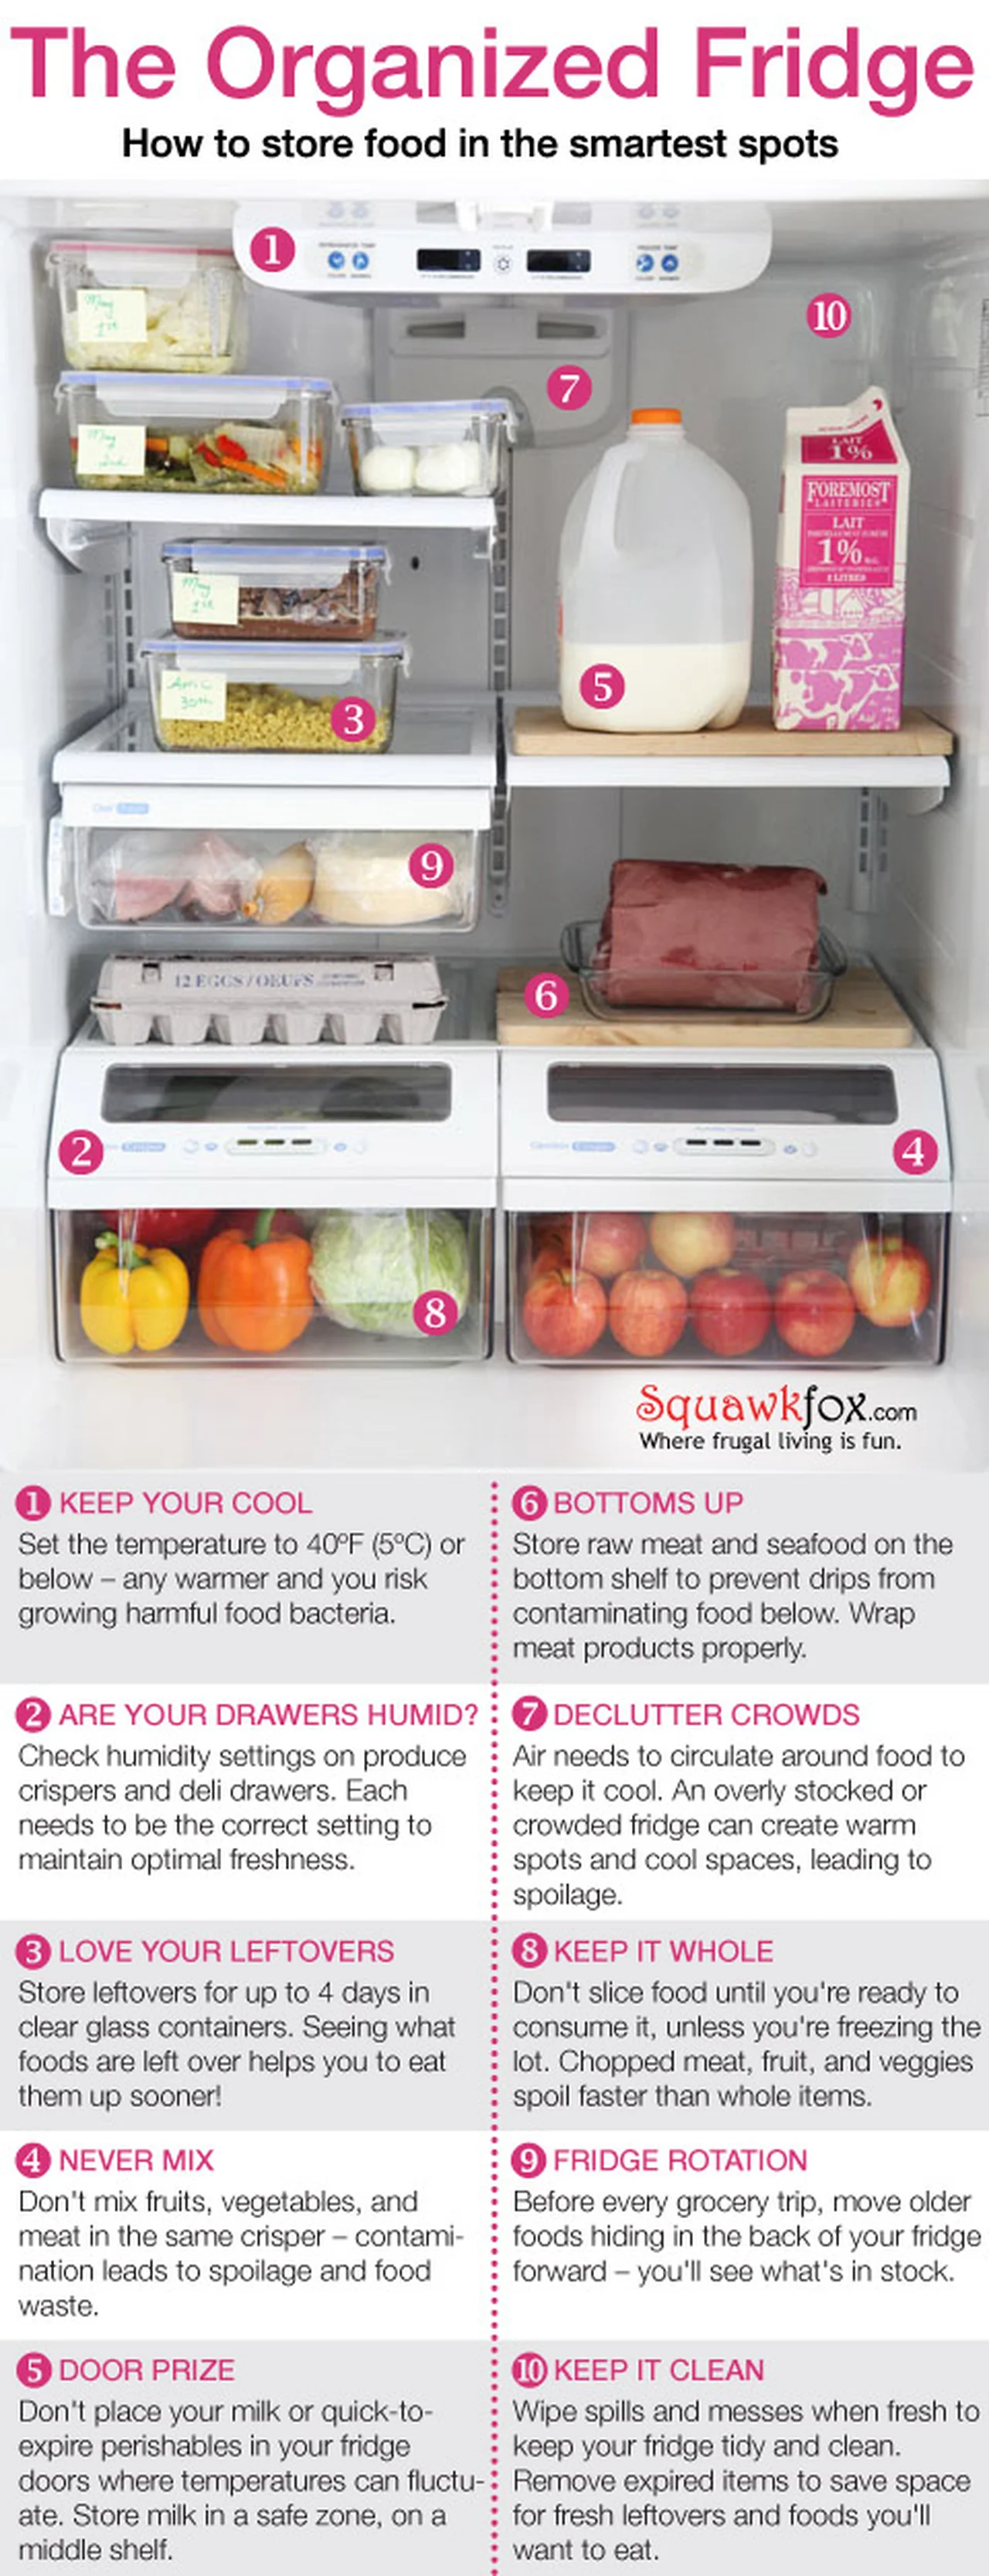 Jak trzymać rzeczy w lodówce